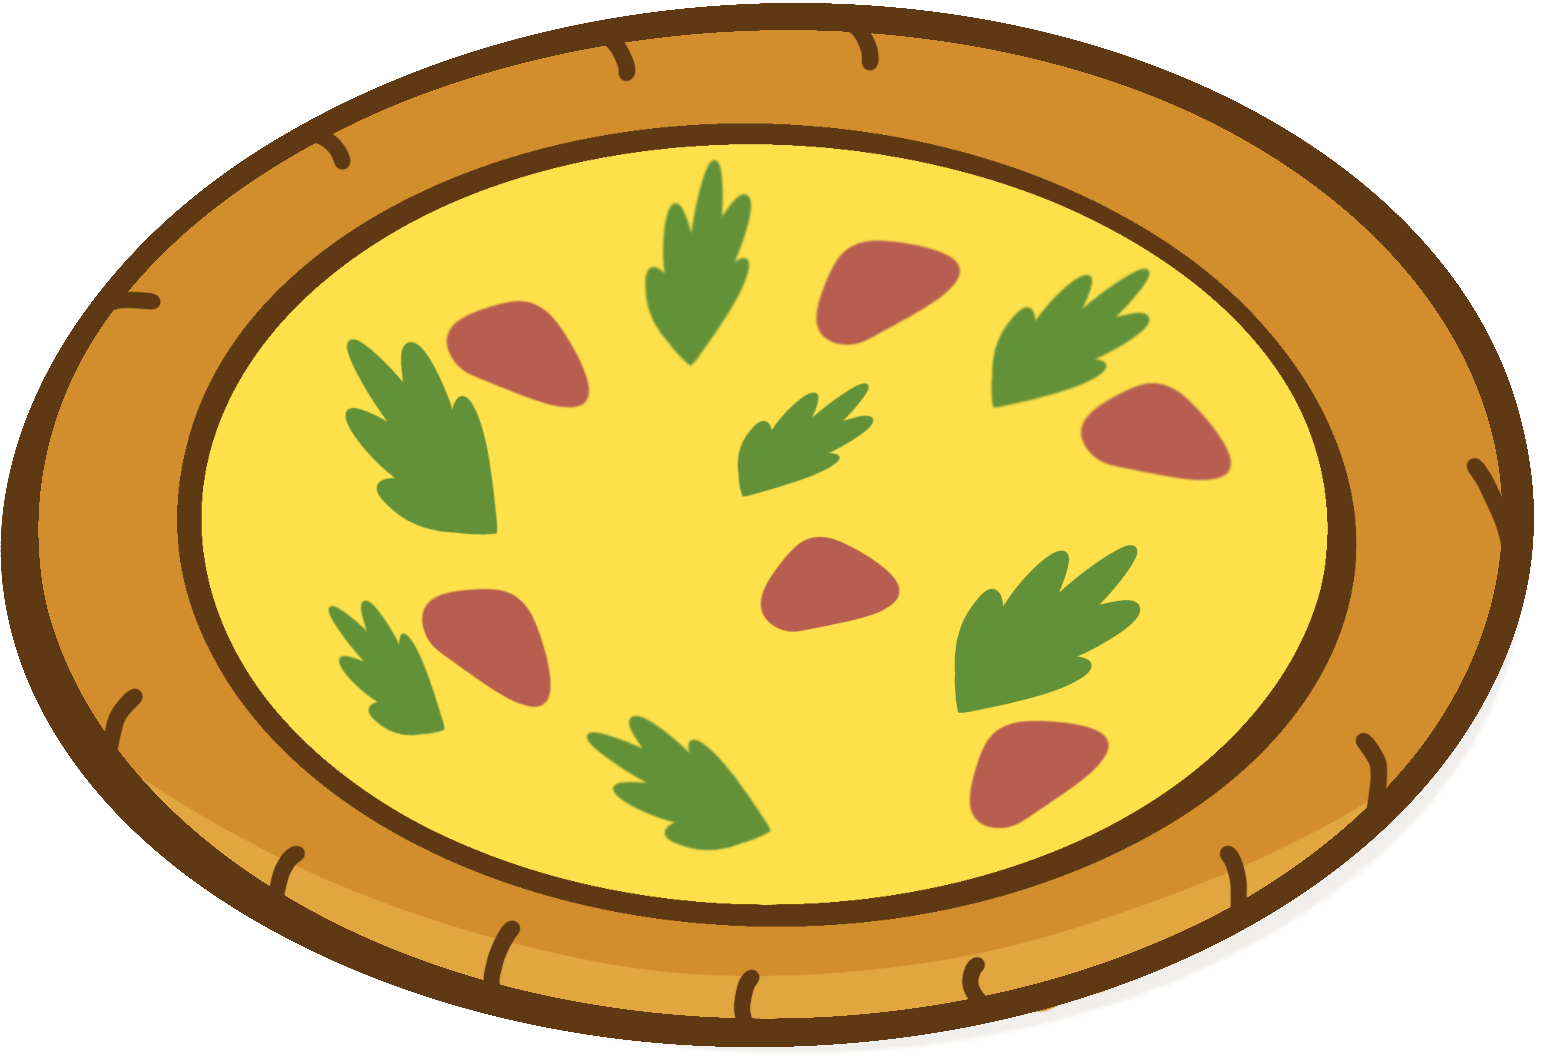 A delicious pizza